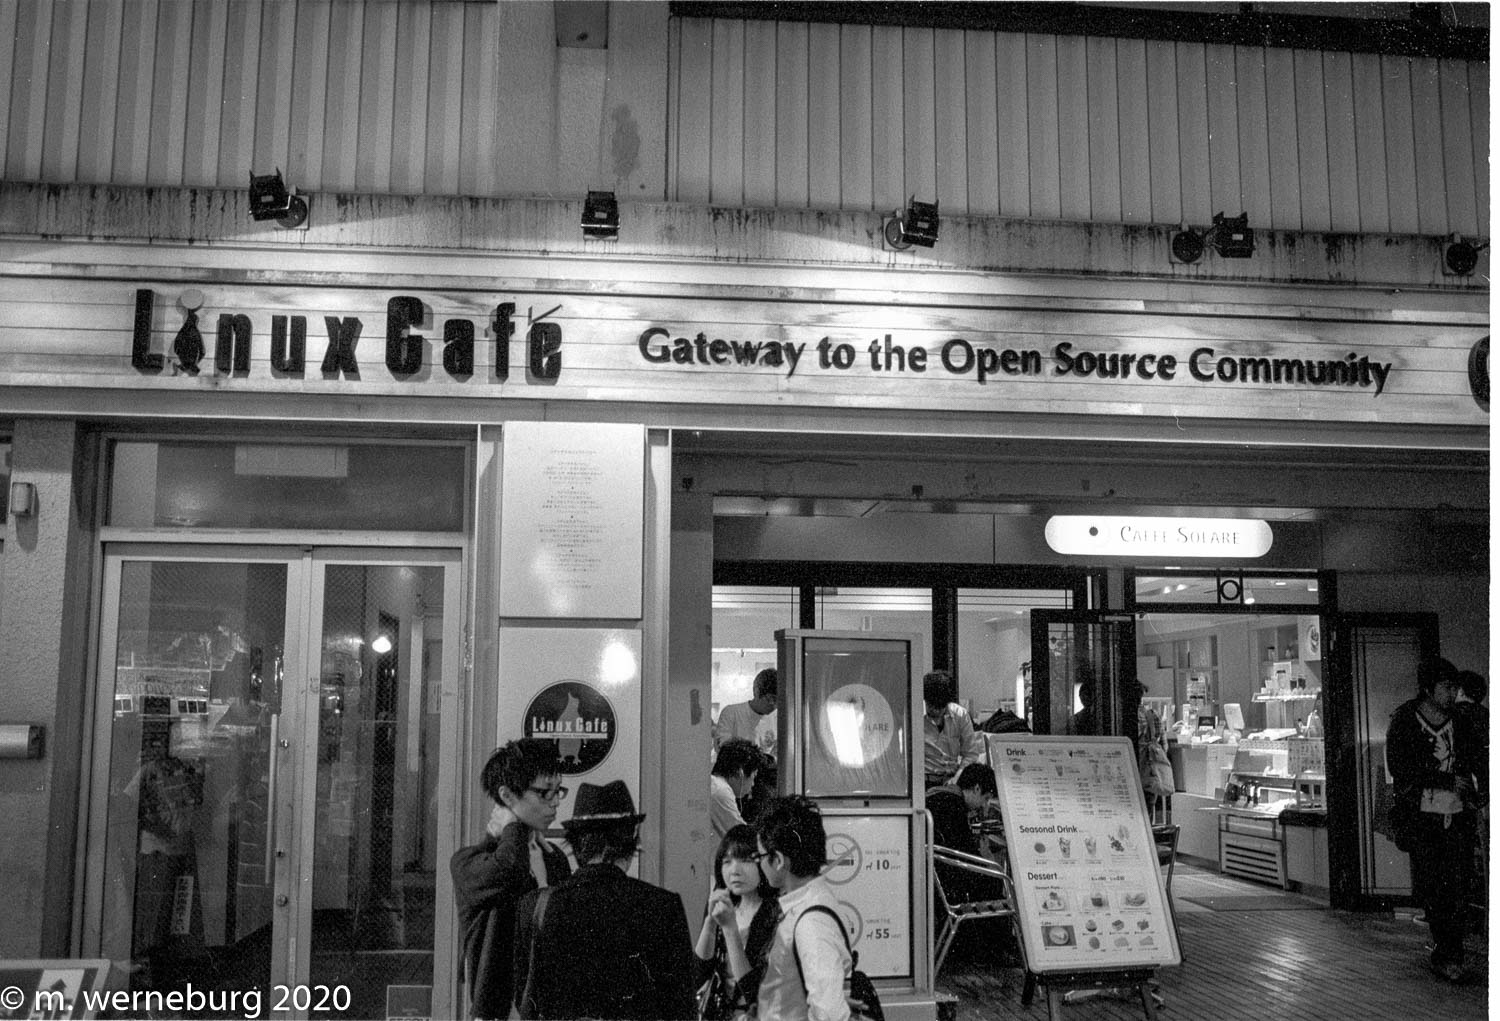 linux café: gateway to the open source community